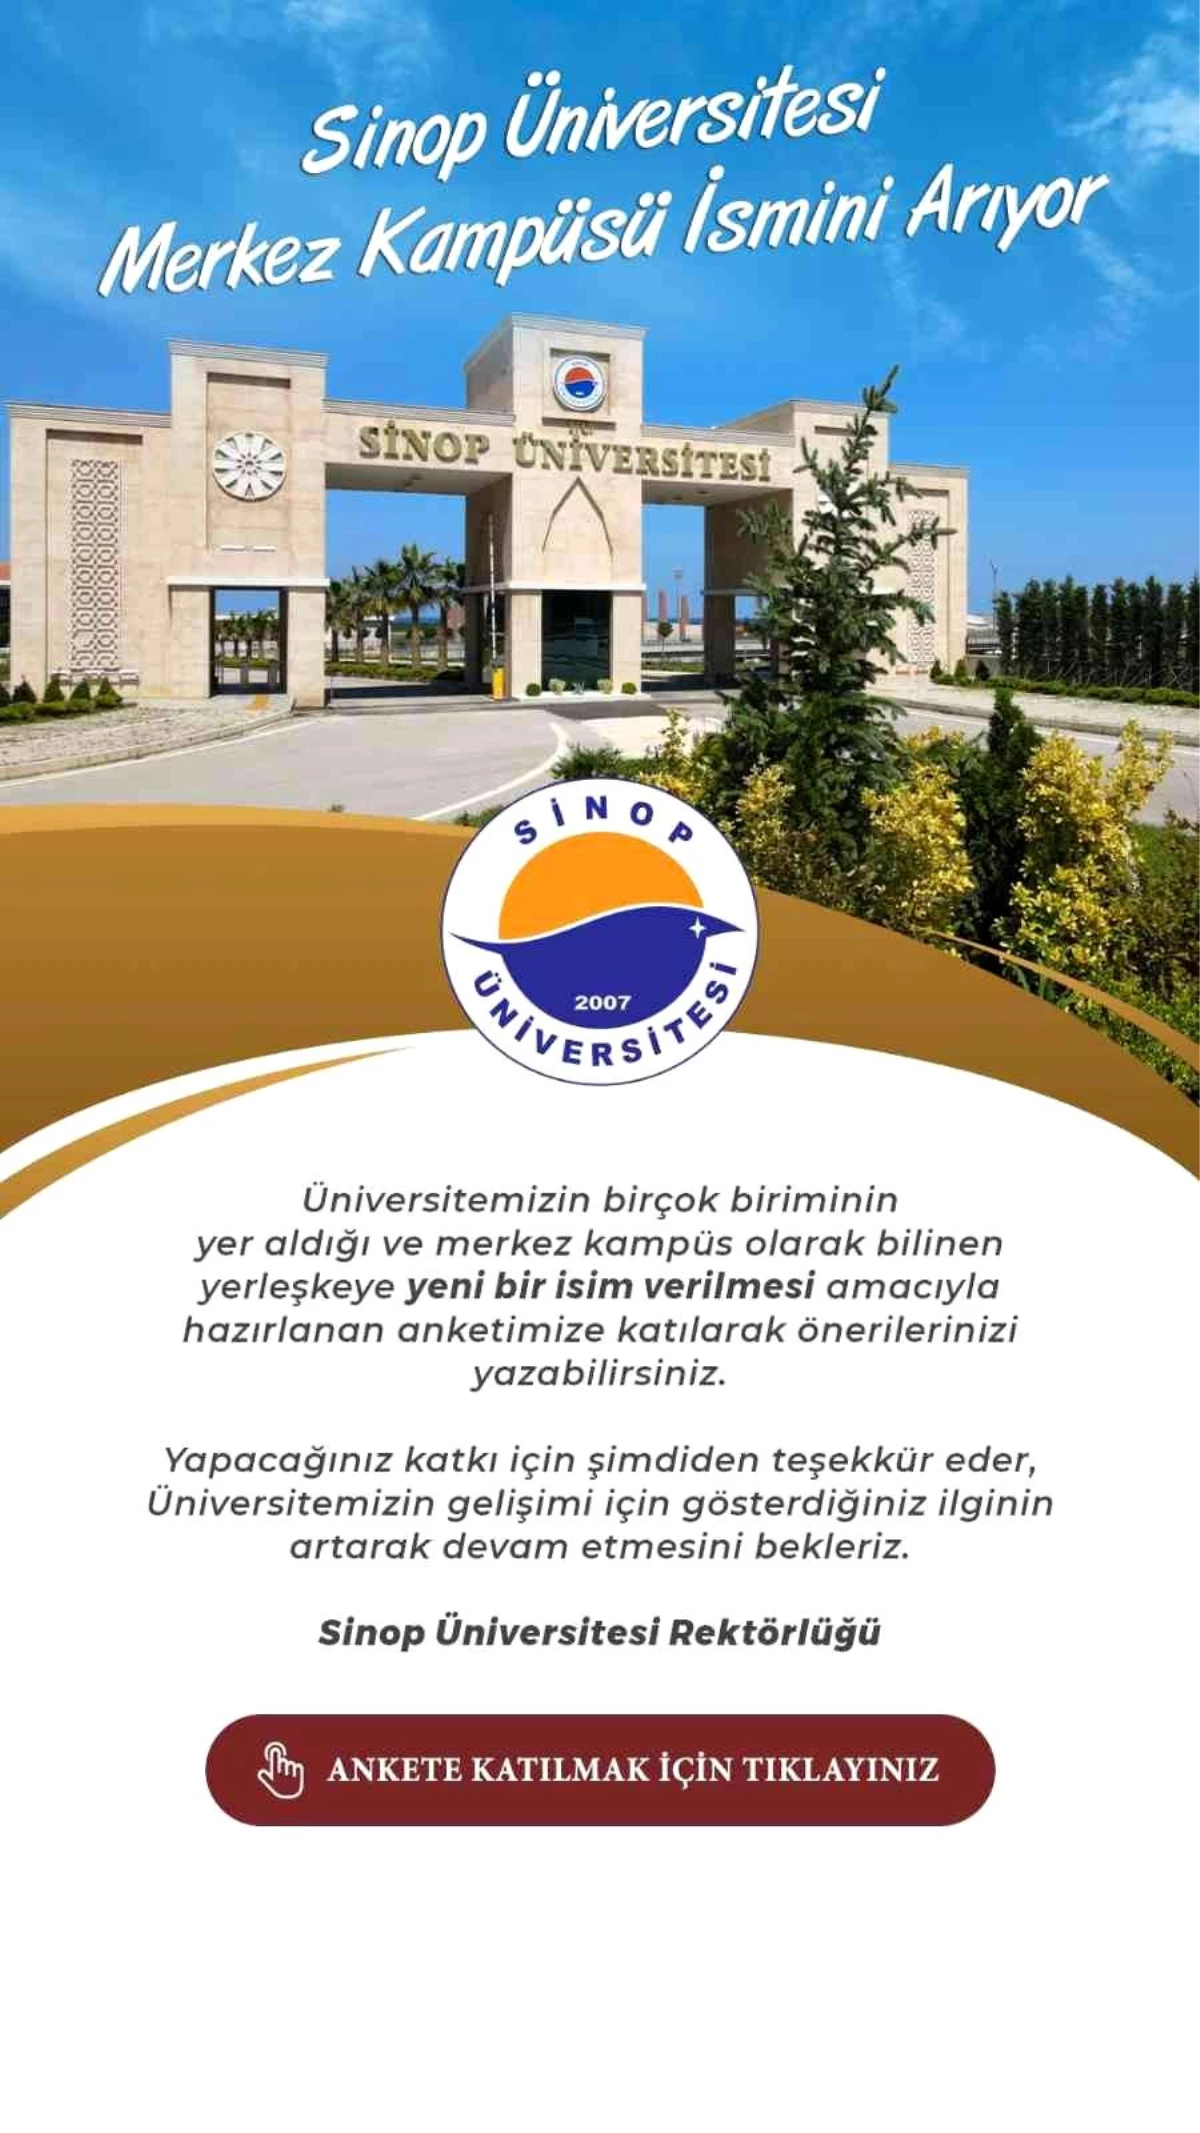 Sinop Üniversitesi merkez kampüsü yeni ismini arıyor